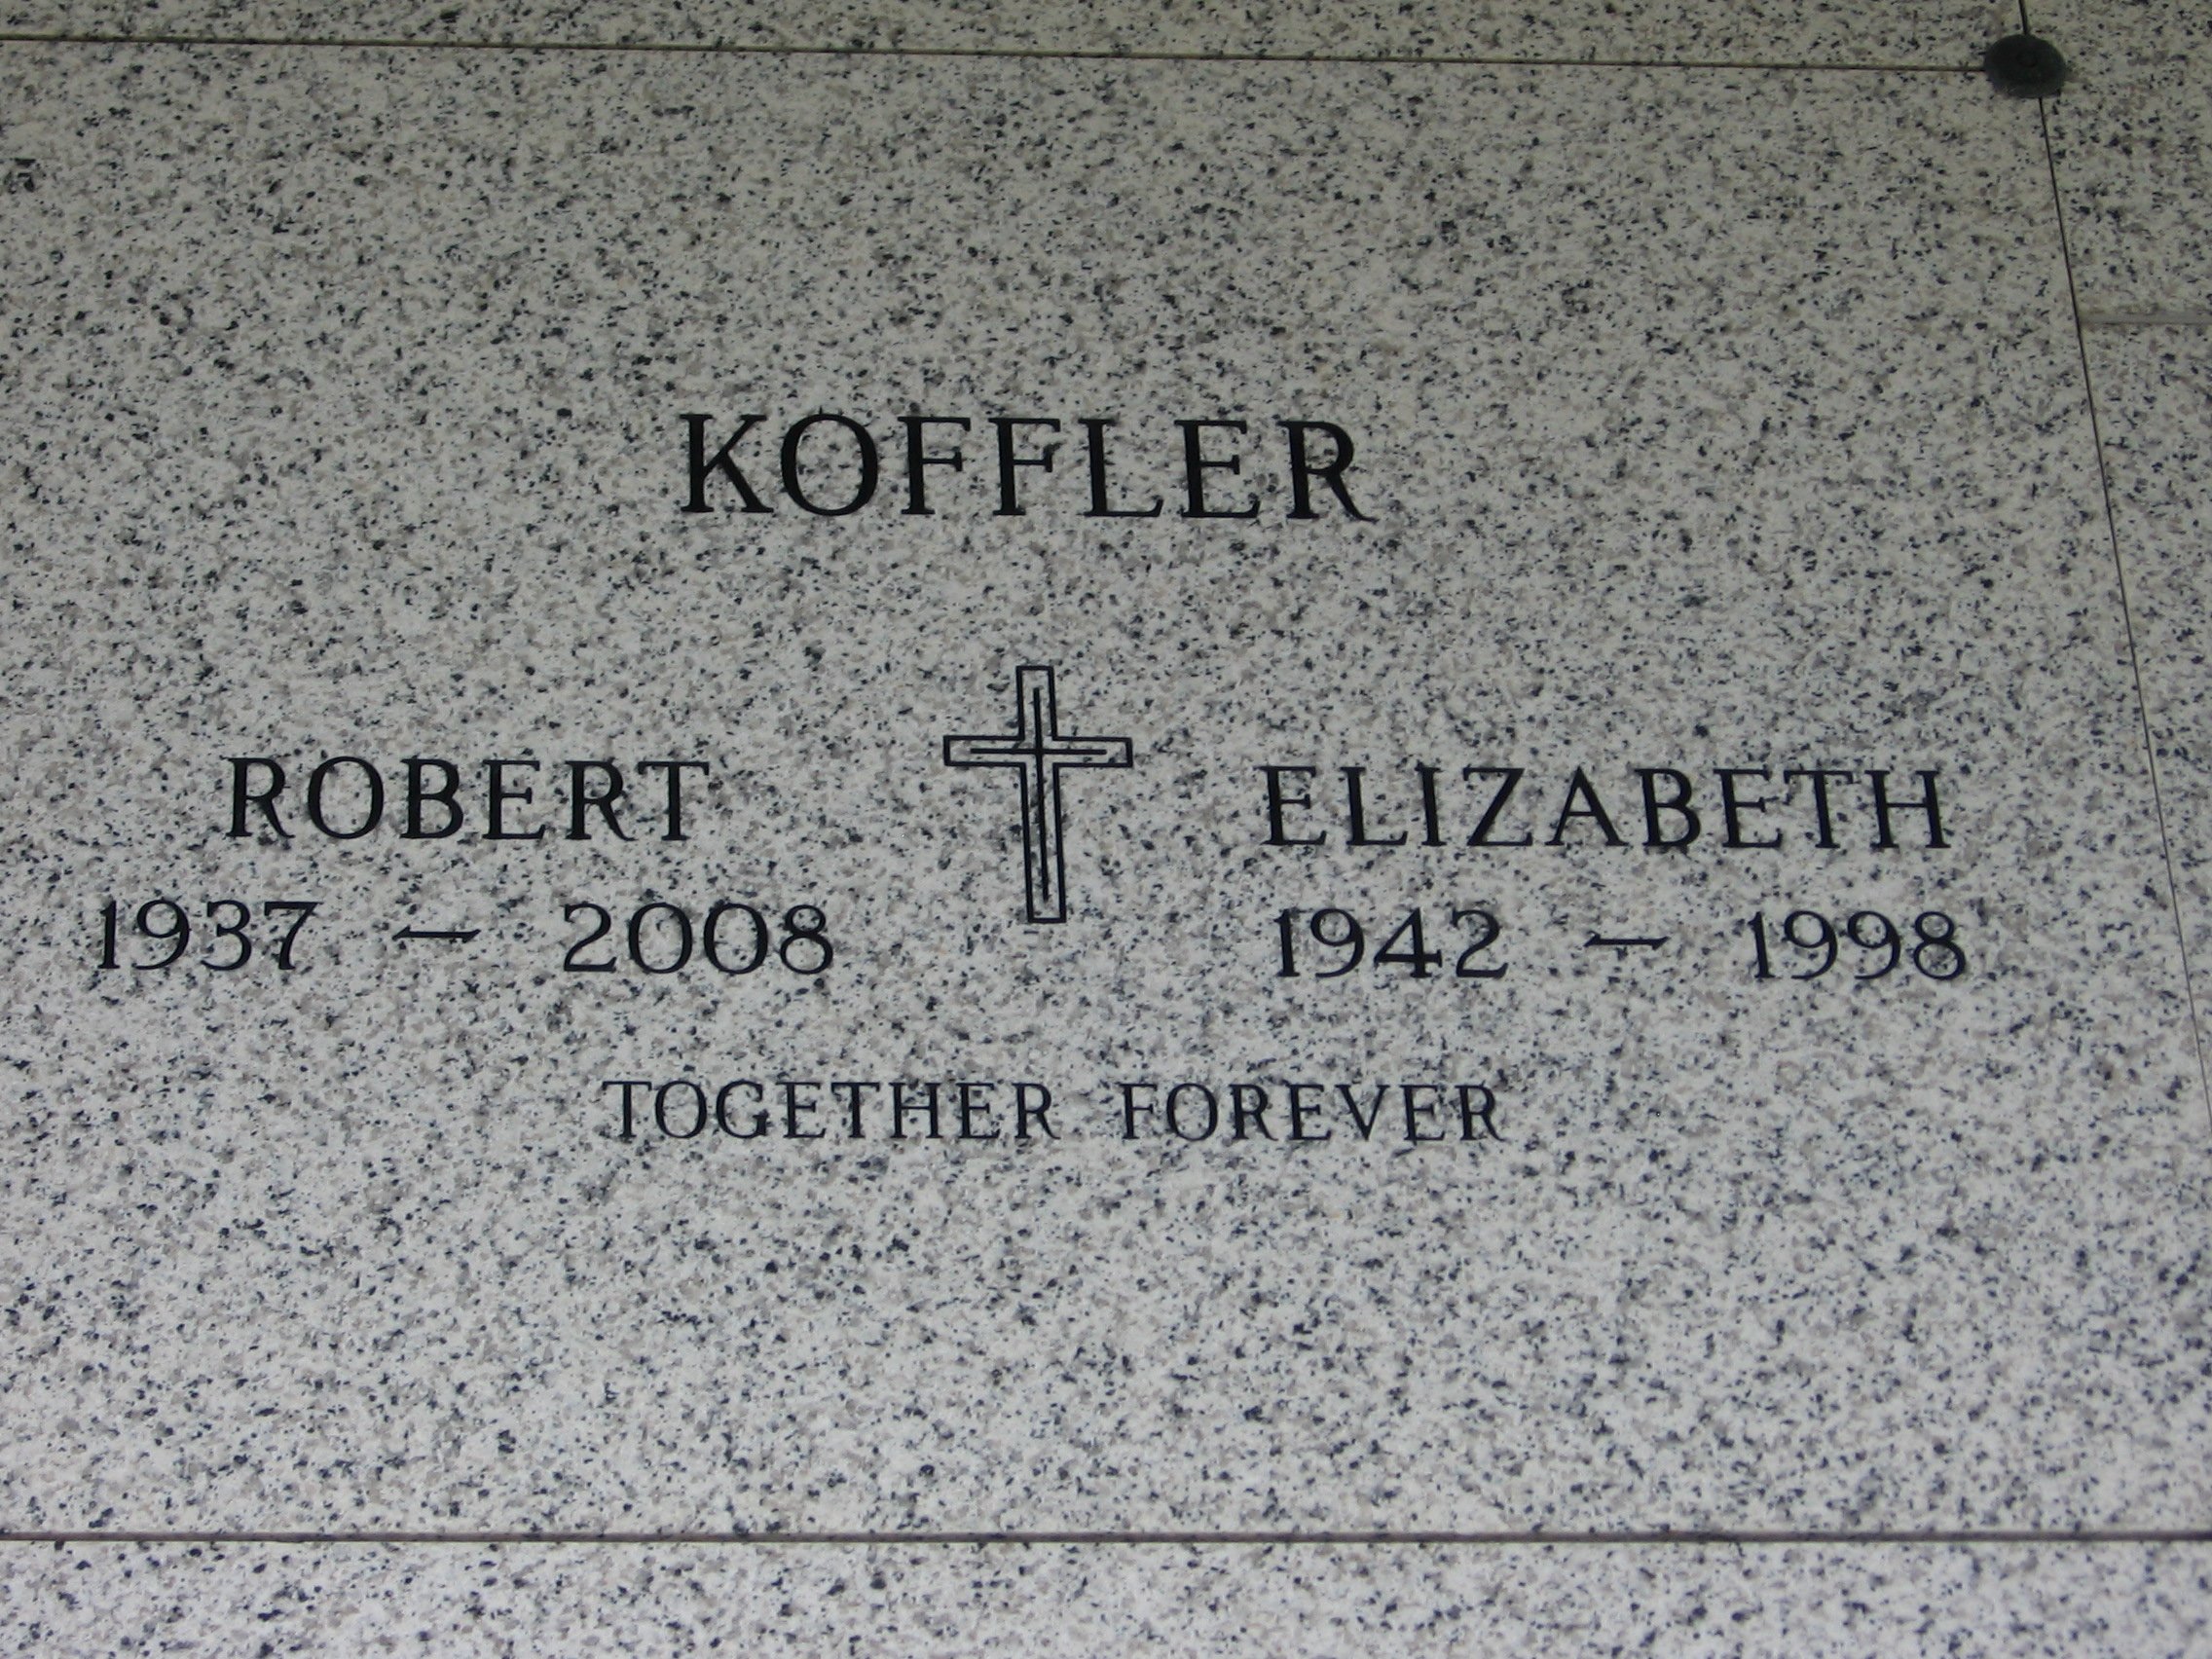 Elizabeth Koffler